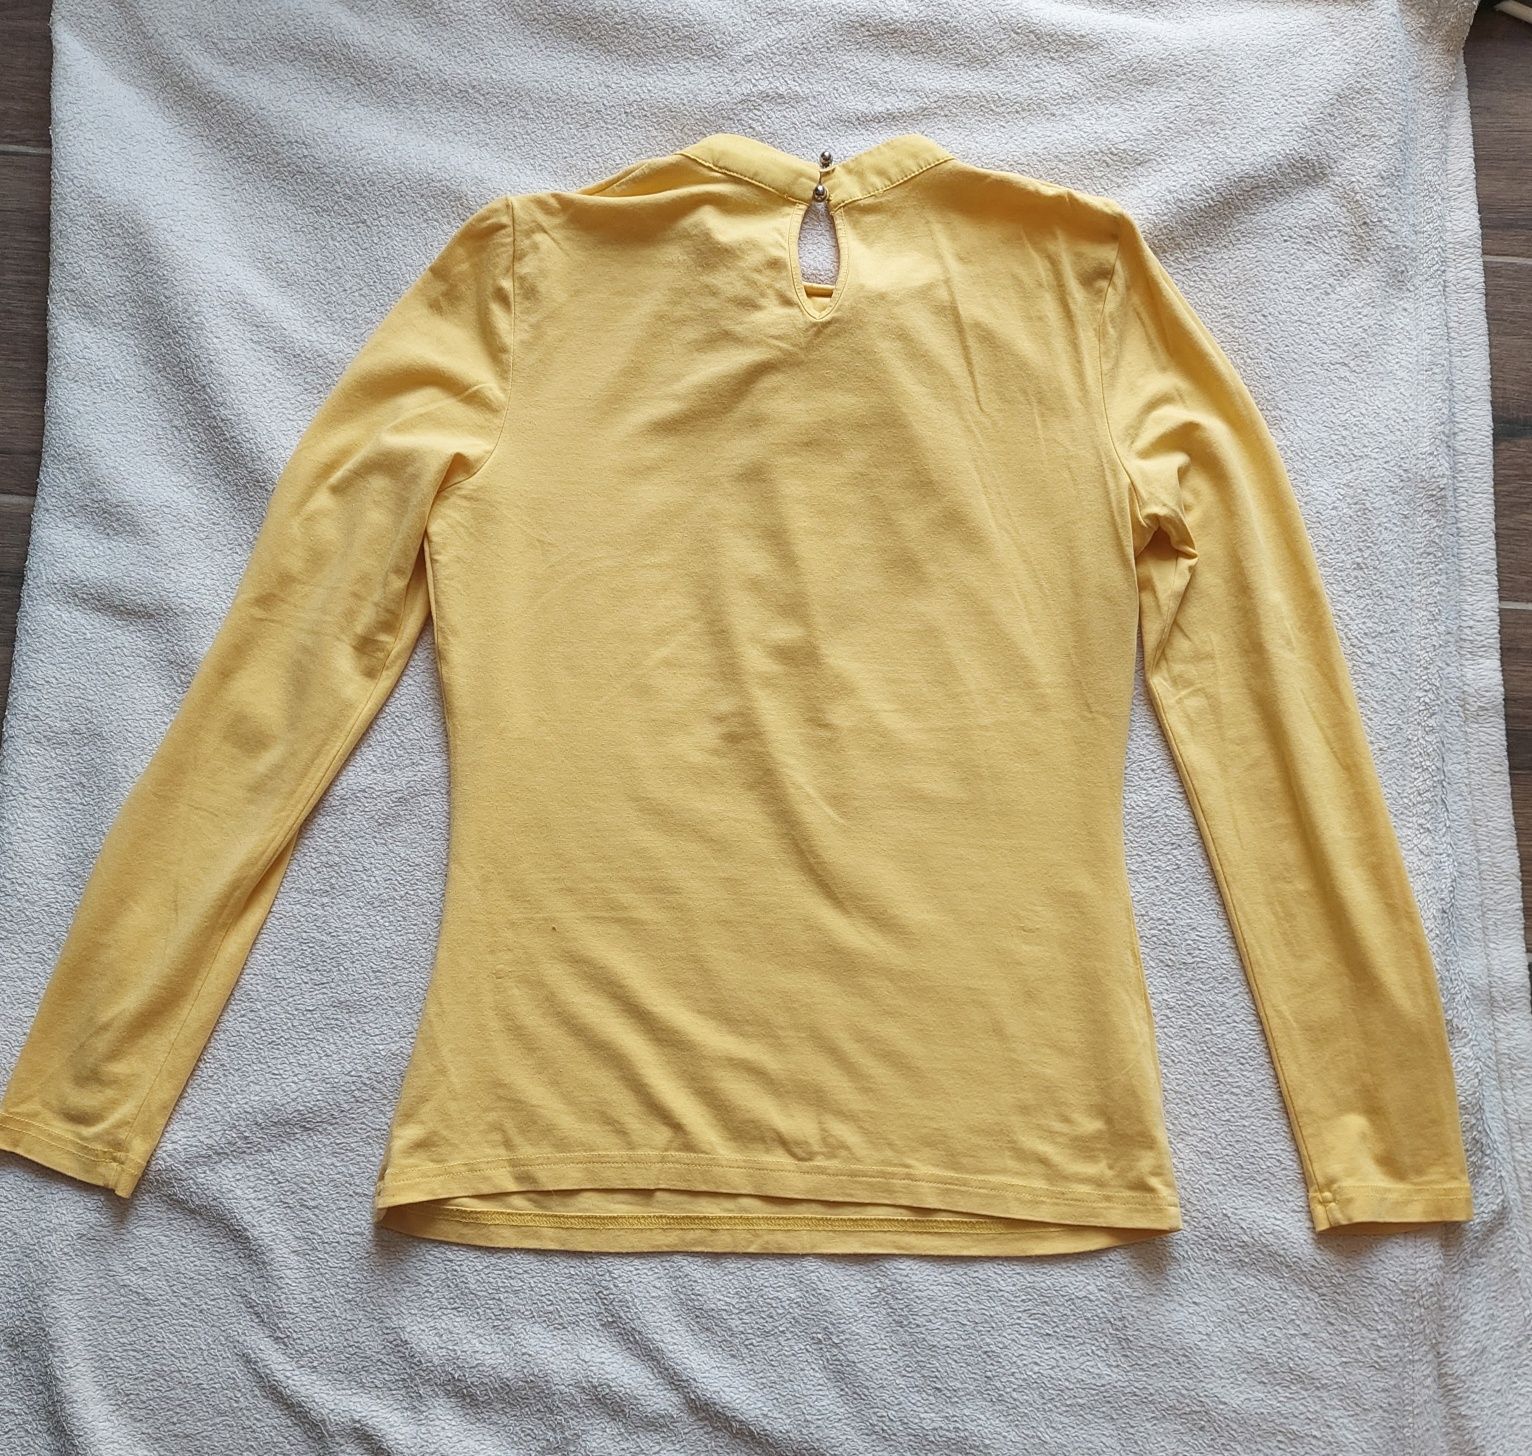 Żółta bluzka z długim rękawem, kokardą pod szyją firmy Taifun roz. M